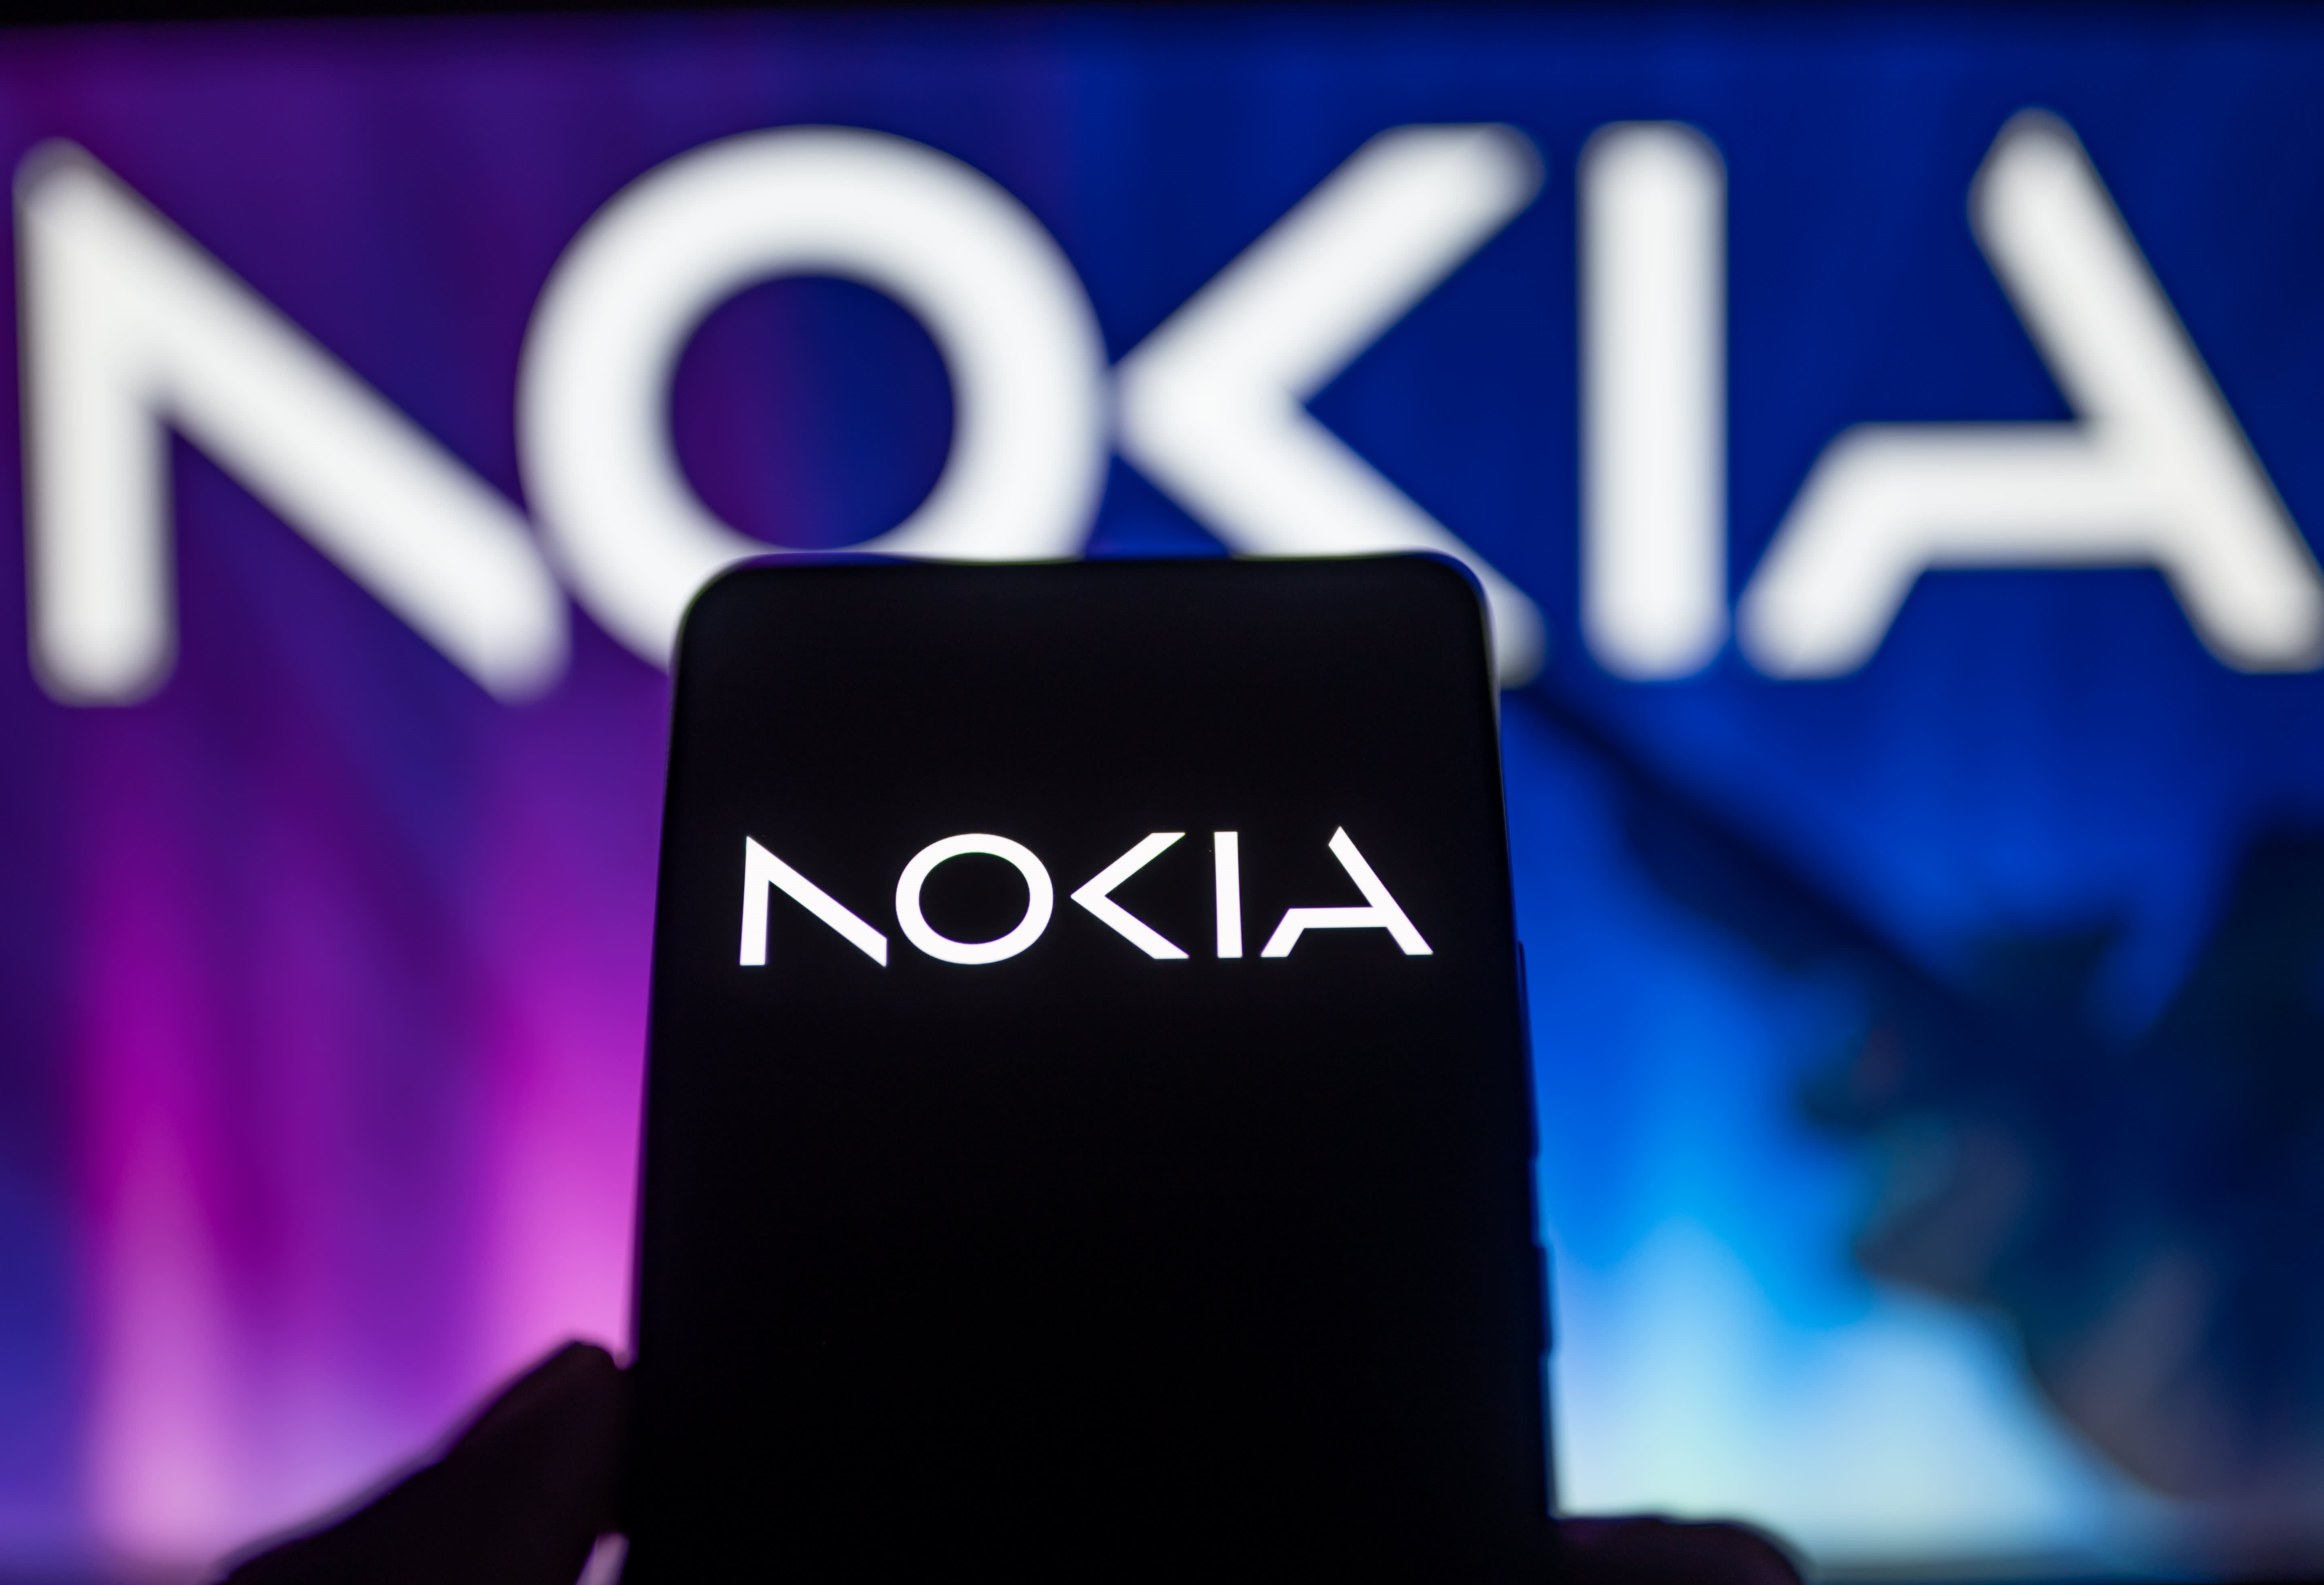 Nokia'da kan kaybı: Toplu işten çıkarmalar başladı